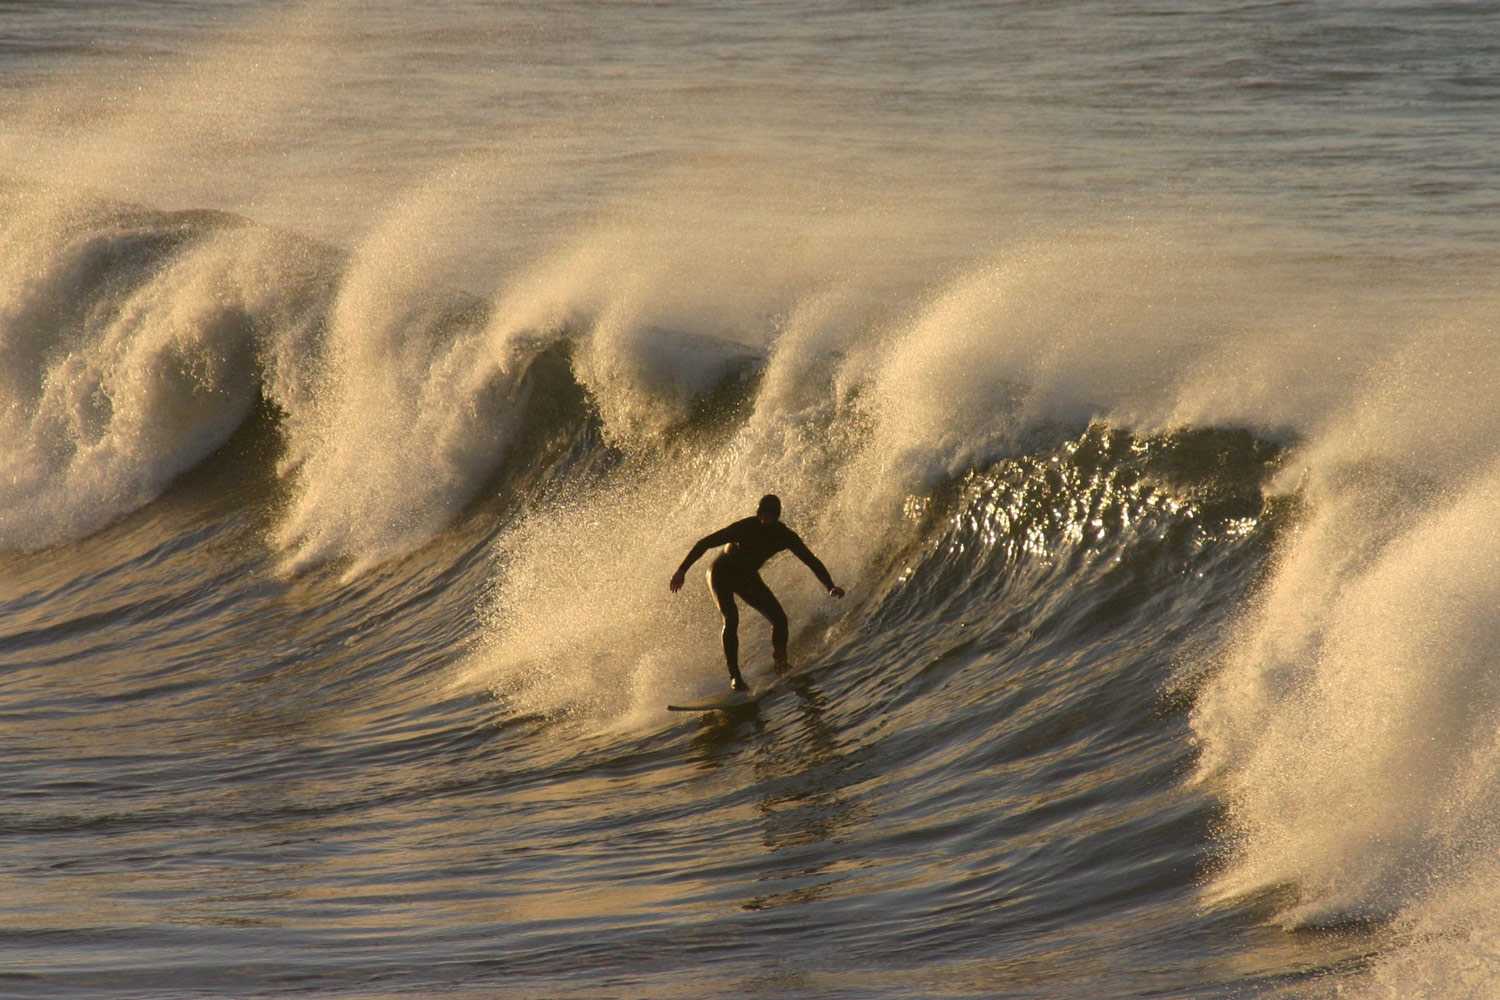 diptic-surfer